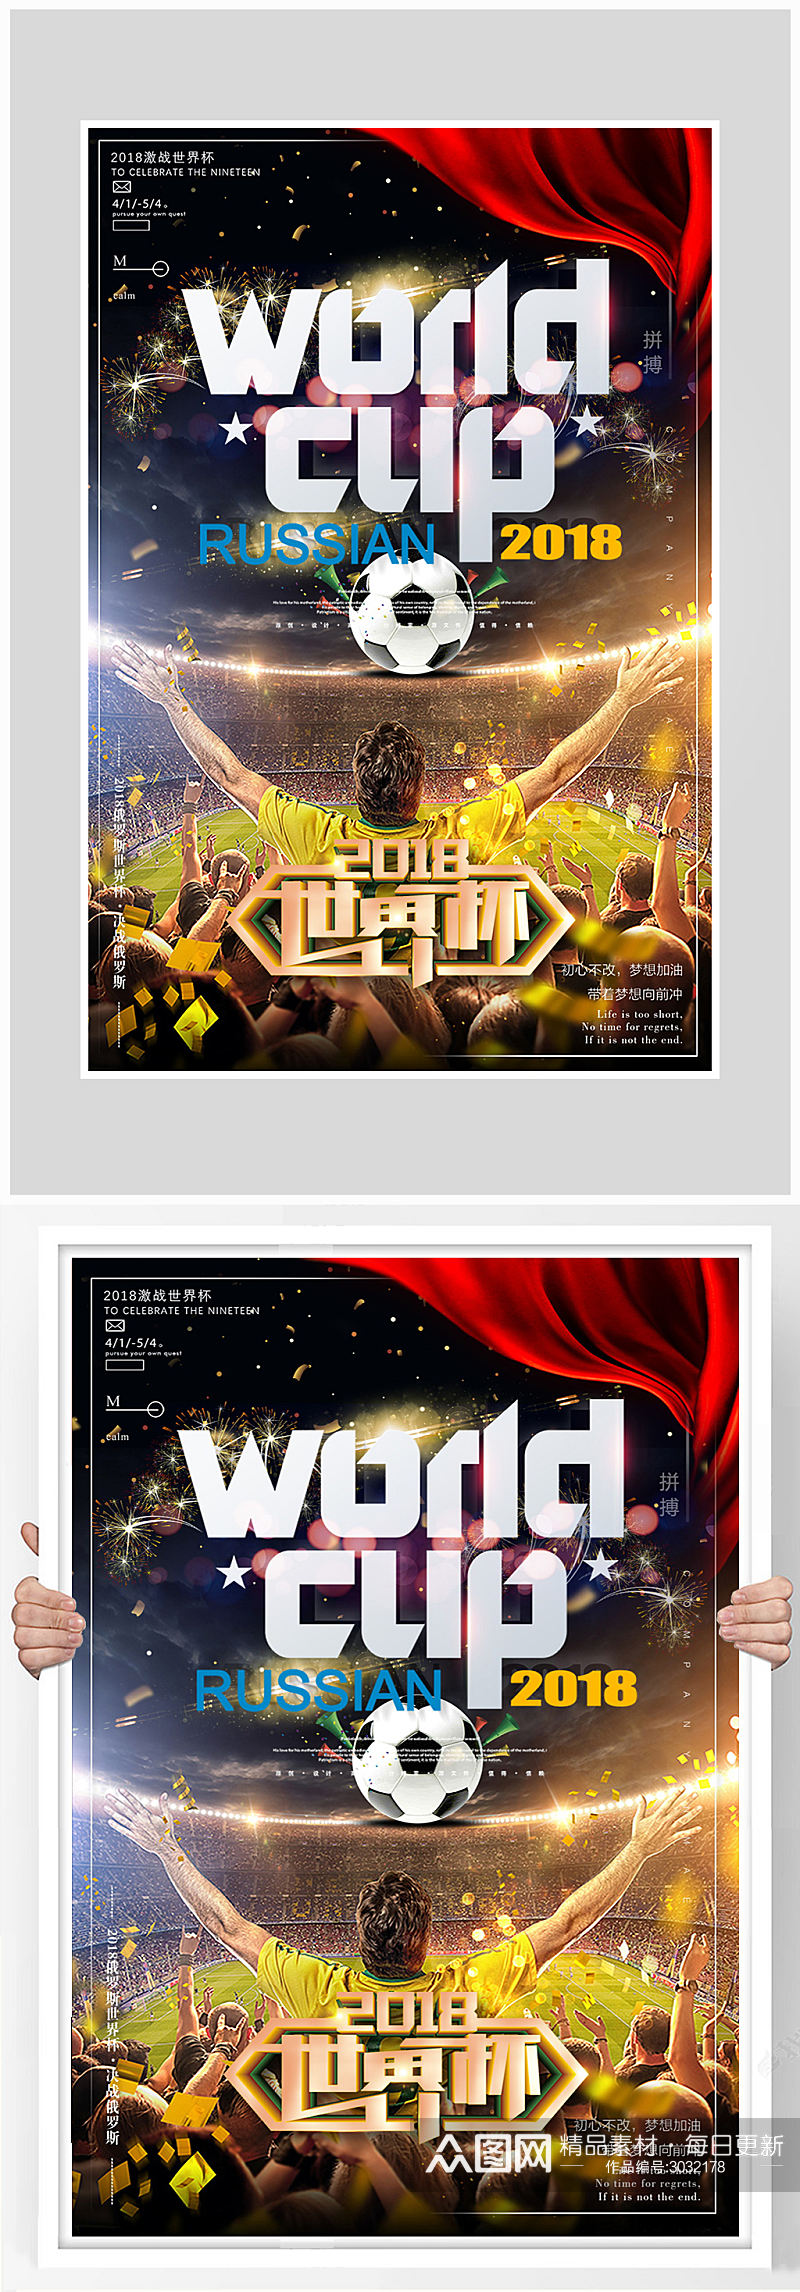 创意世界杯足球比赛海报设计素材